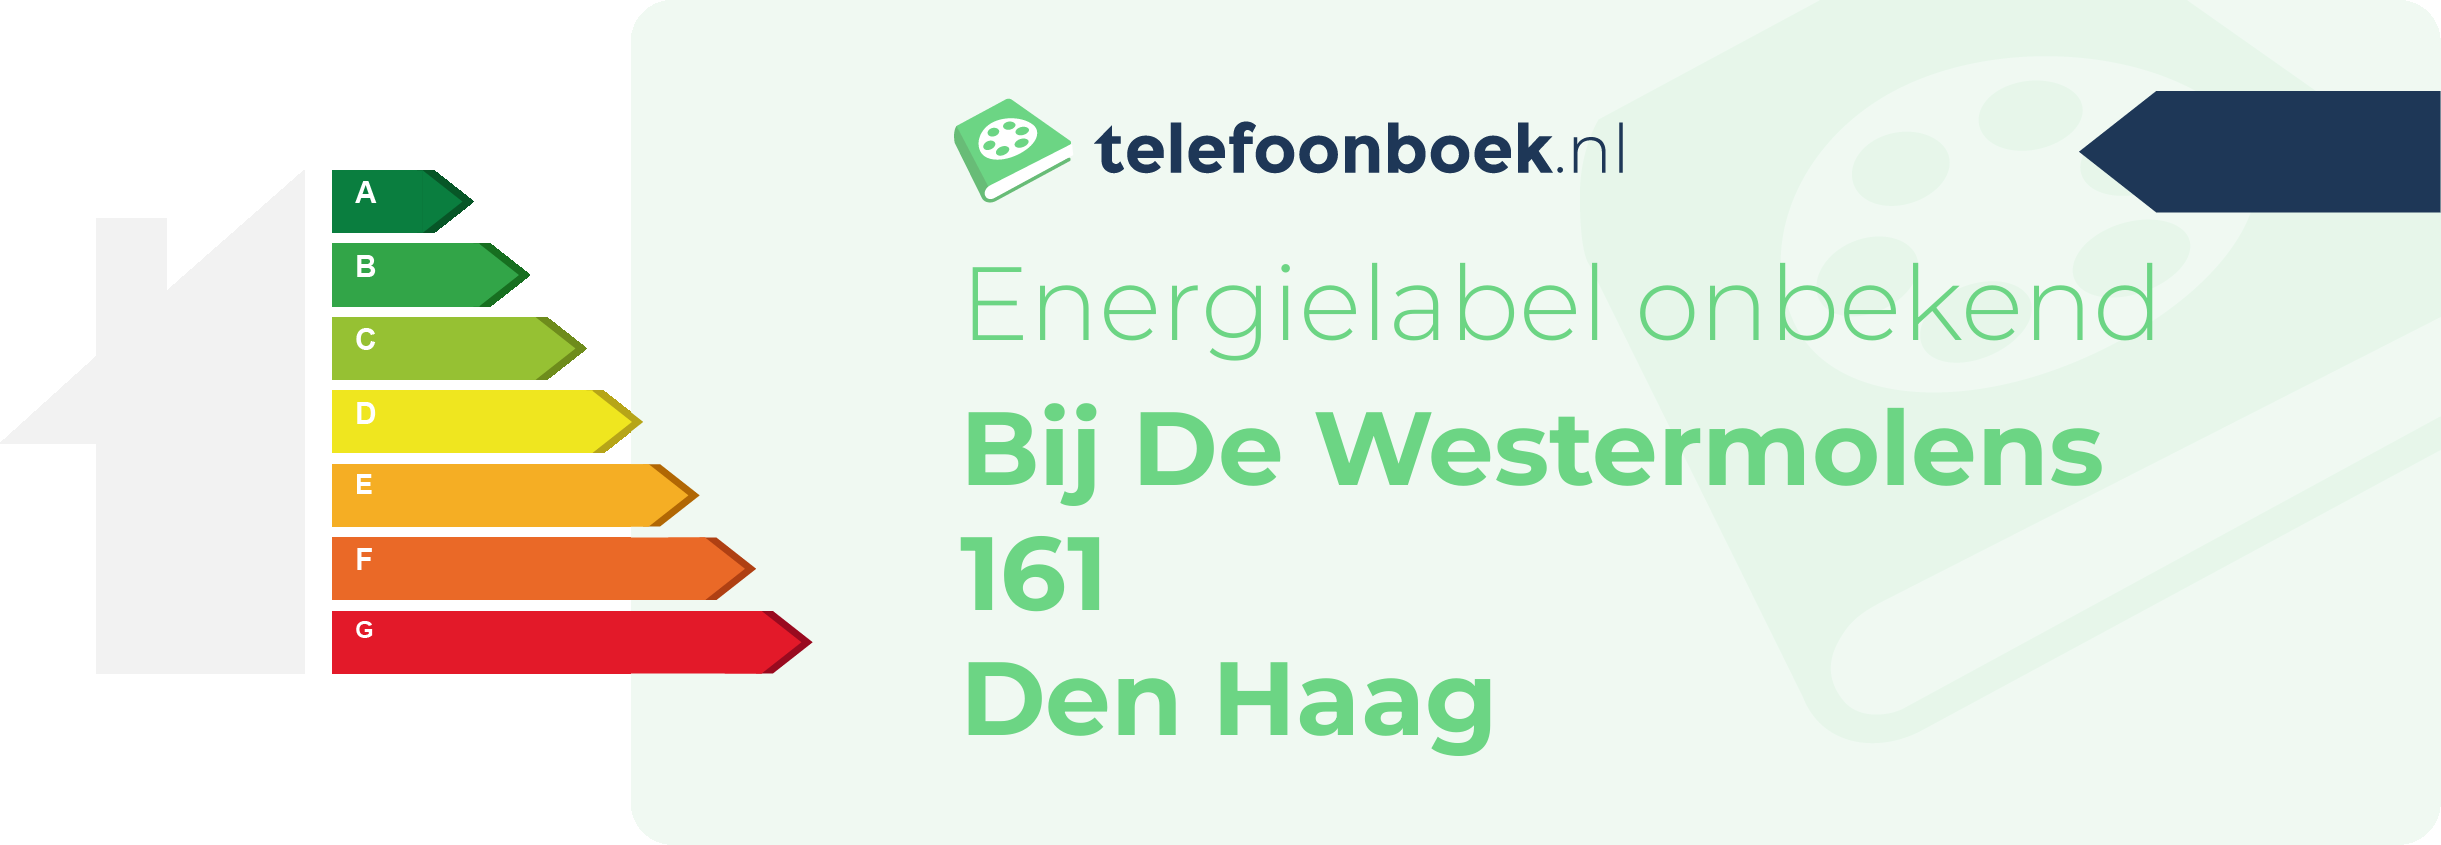 Energielabel Bij De Westermolens 161 Den Haag